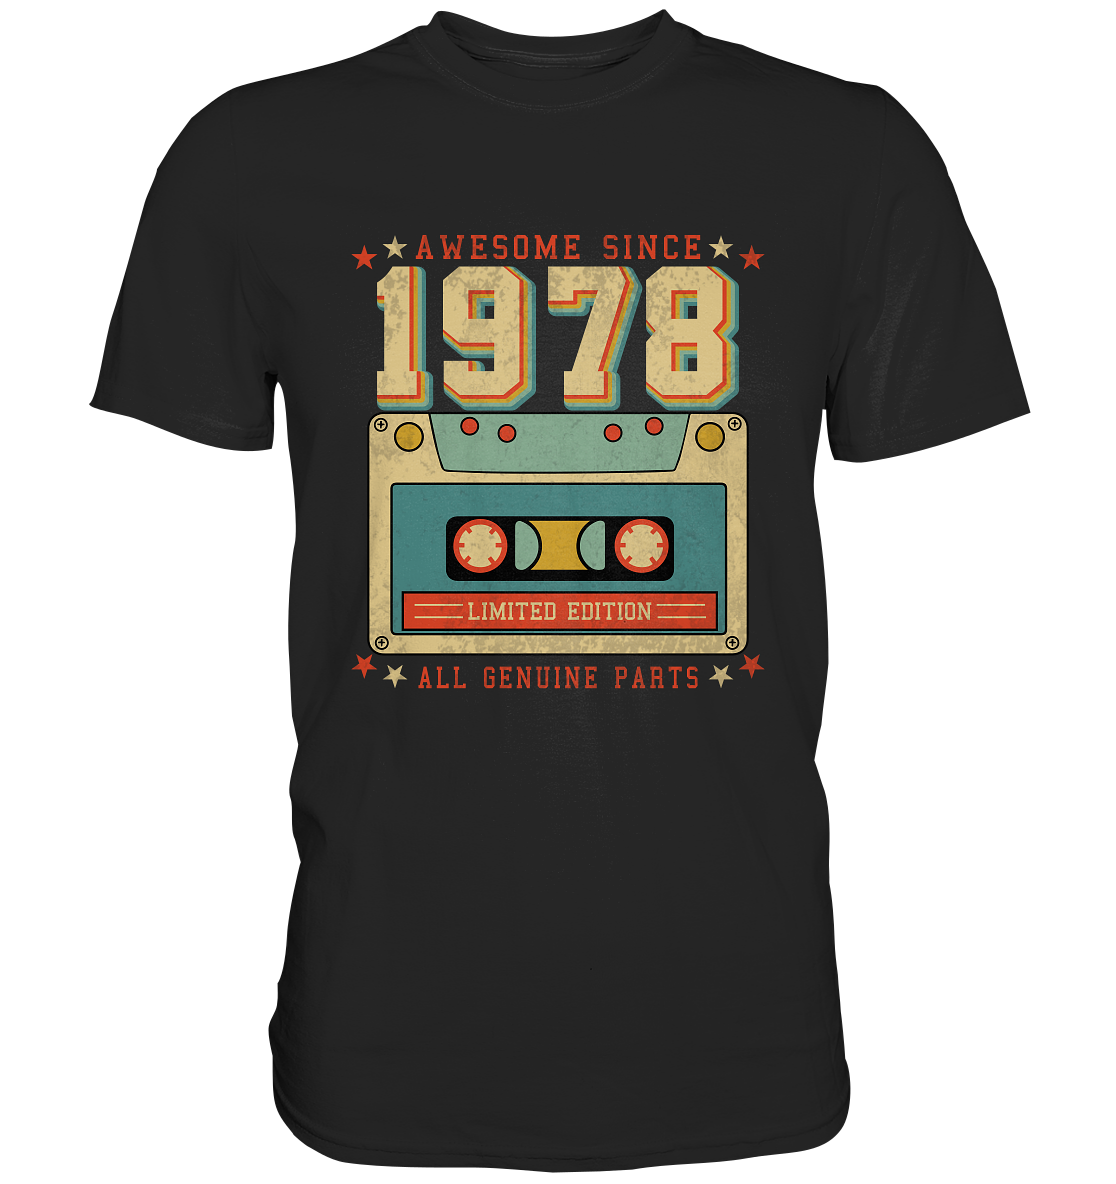 Awsome since 1978 Vintage Retro - Premium Shirt